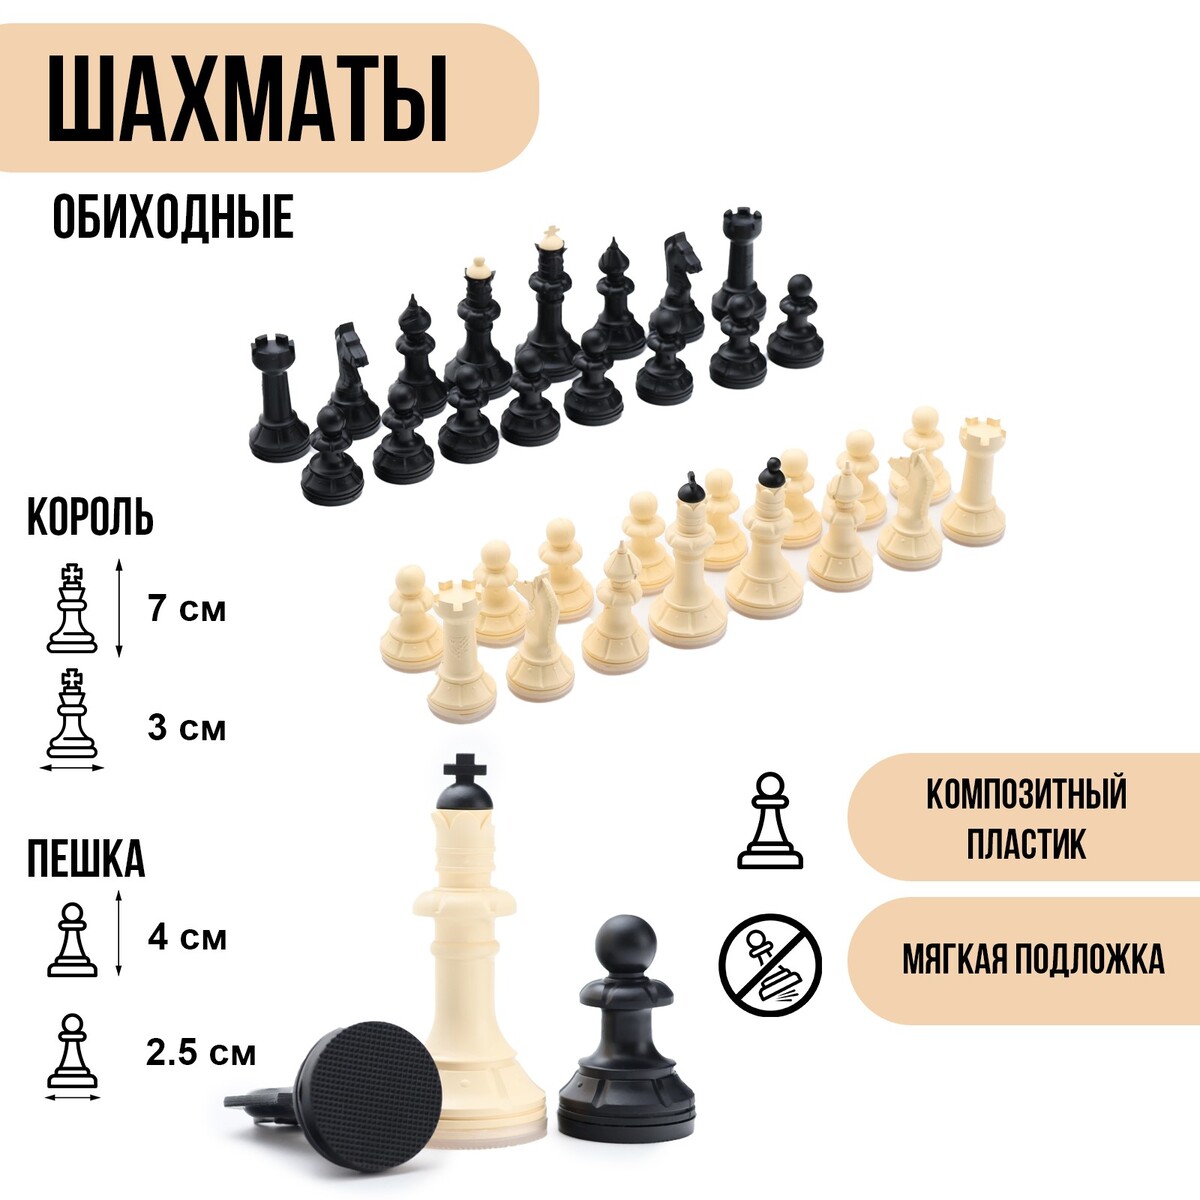 Шахматные фигуры обиходные, король h=7 см, пешка-4 см, пластик шахматные лекции